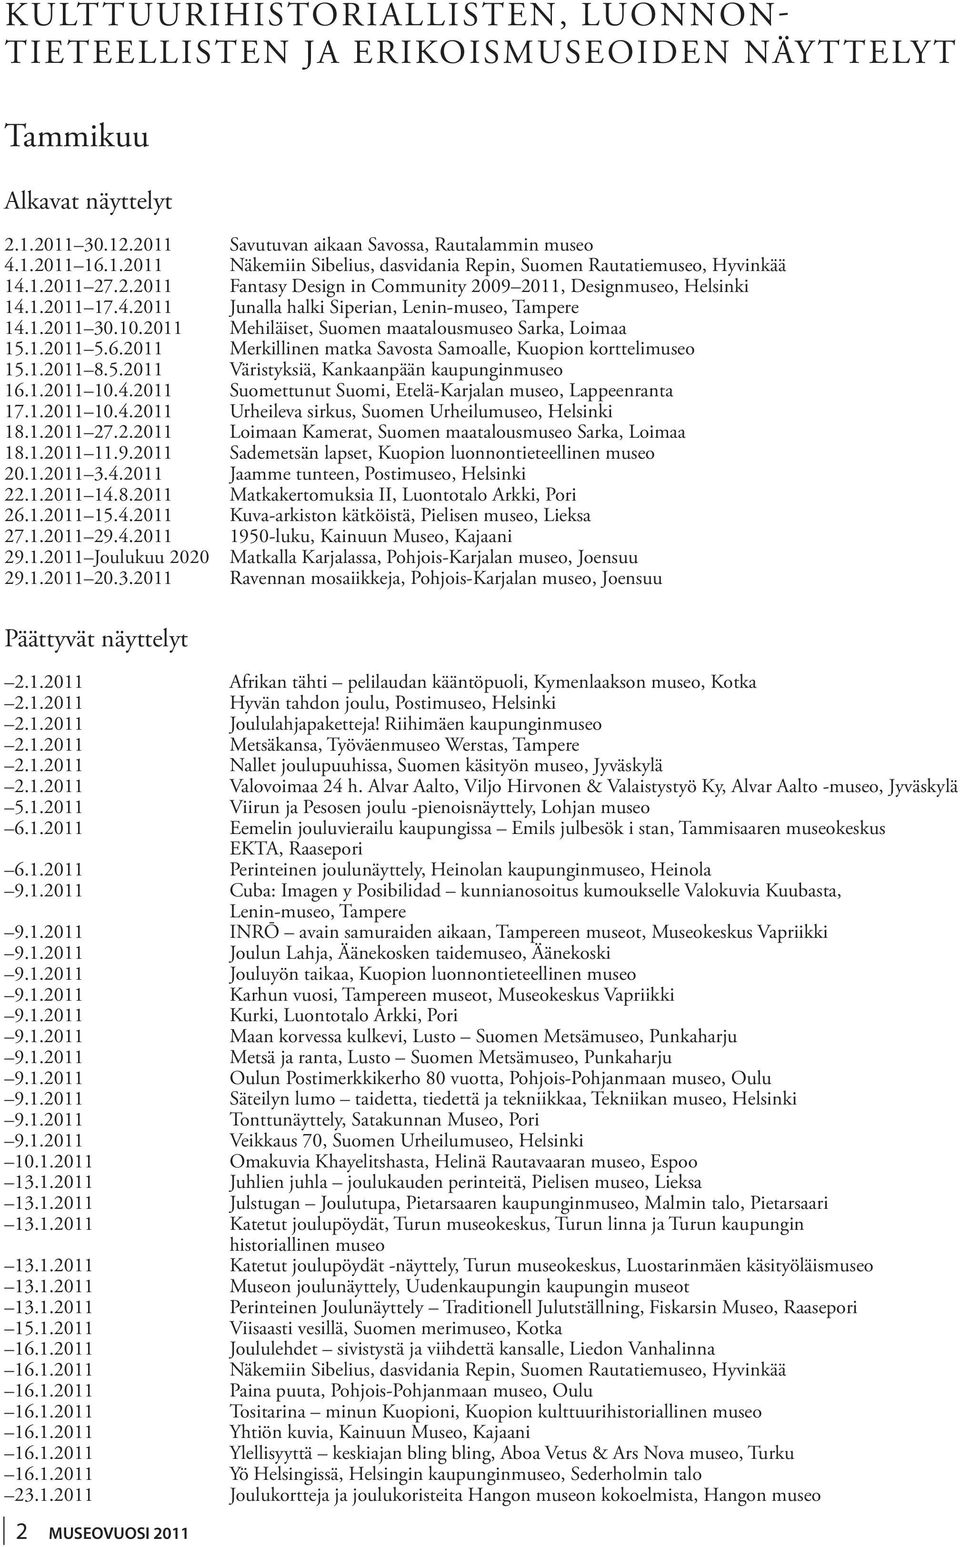 2011 Mehiläiset, Suomen maatalousmuseo Sarka, Loimaa. 15.1.2011 5.6.2011 Merkillinen matka Savosta Samoalle, Kuopion korttelimuseo. 15.1.2011 8.5.2011 Väristyksiä, Kankaanpään kaupunginmuseo. 16.1.2011 10.